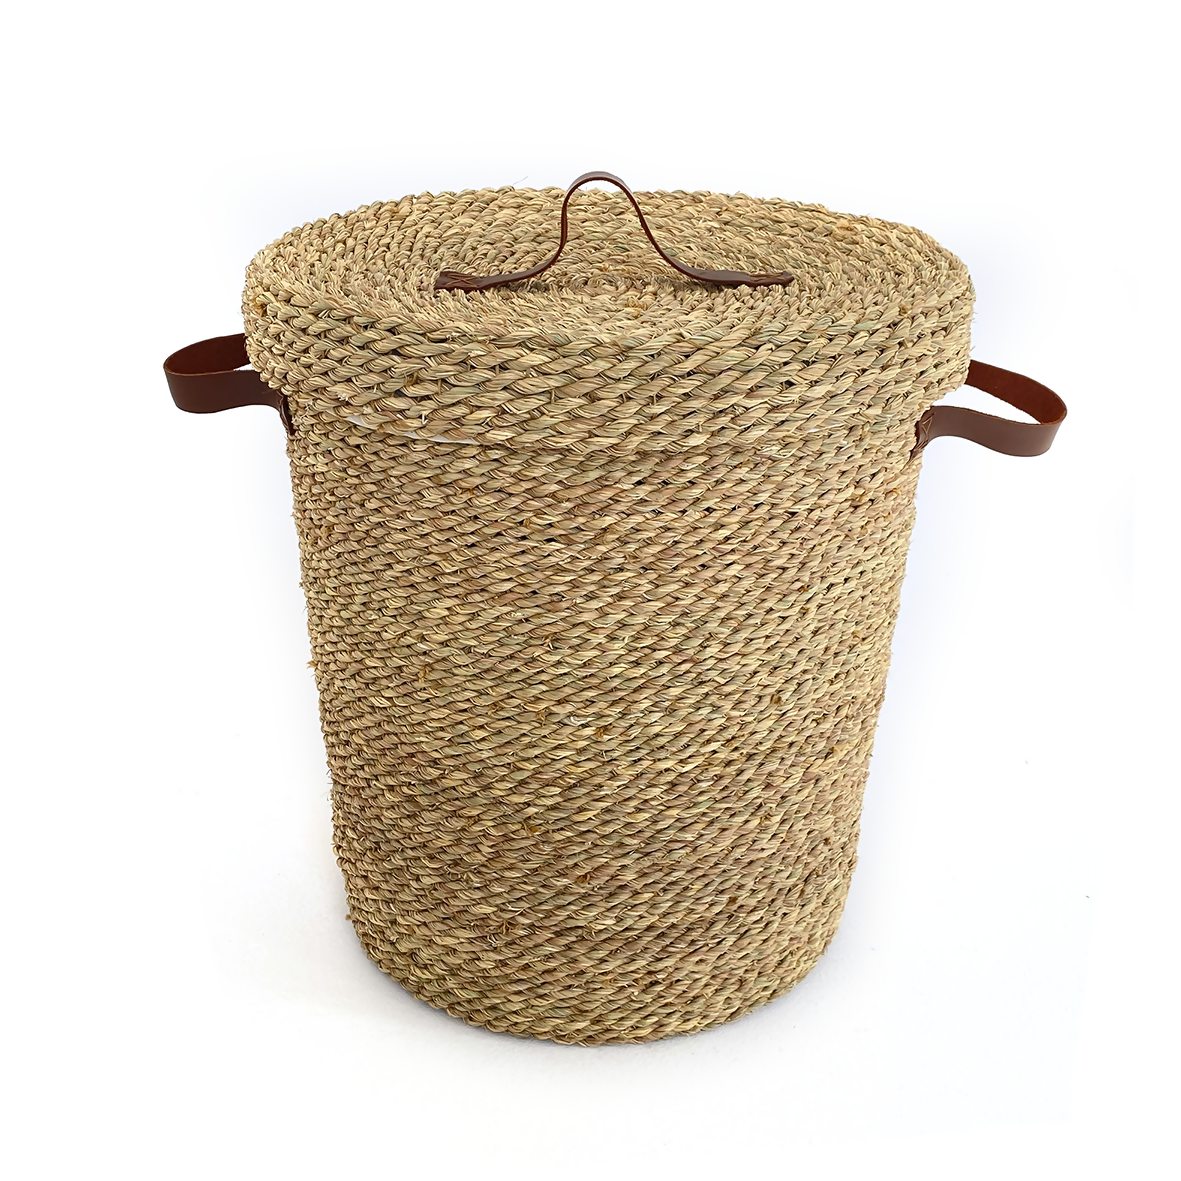 Halfa Laundry Basket with Hood & Leather Handle